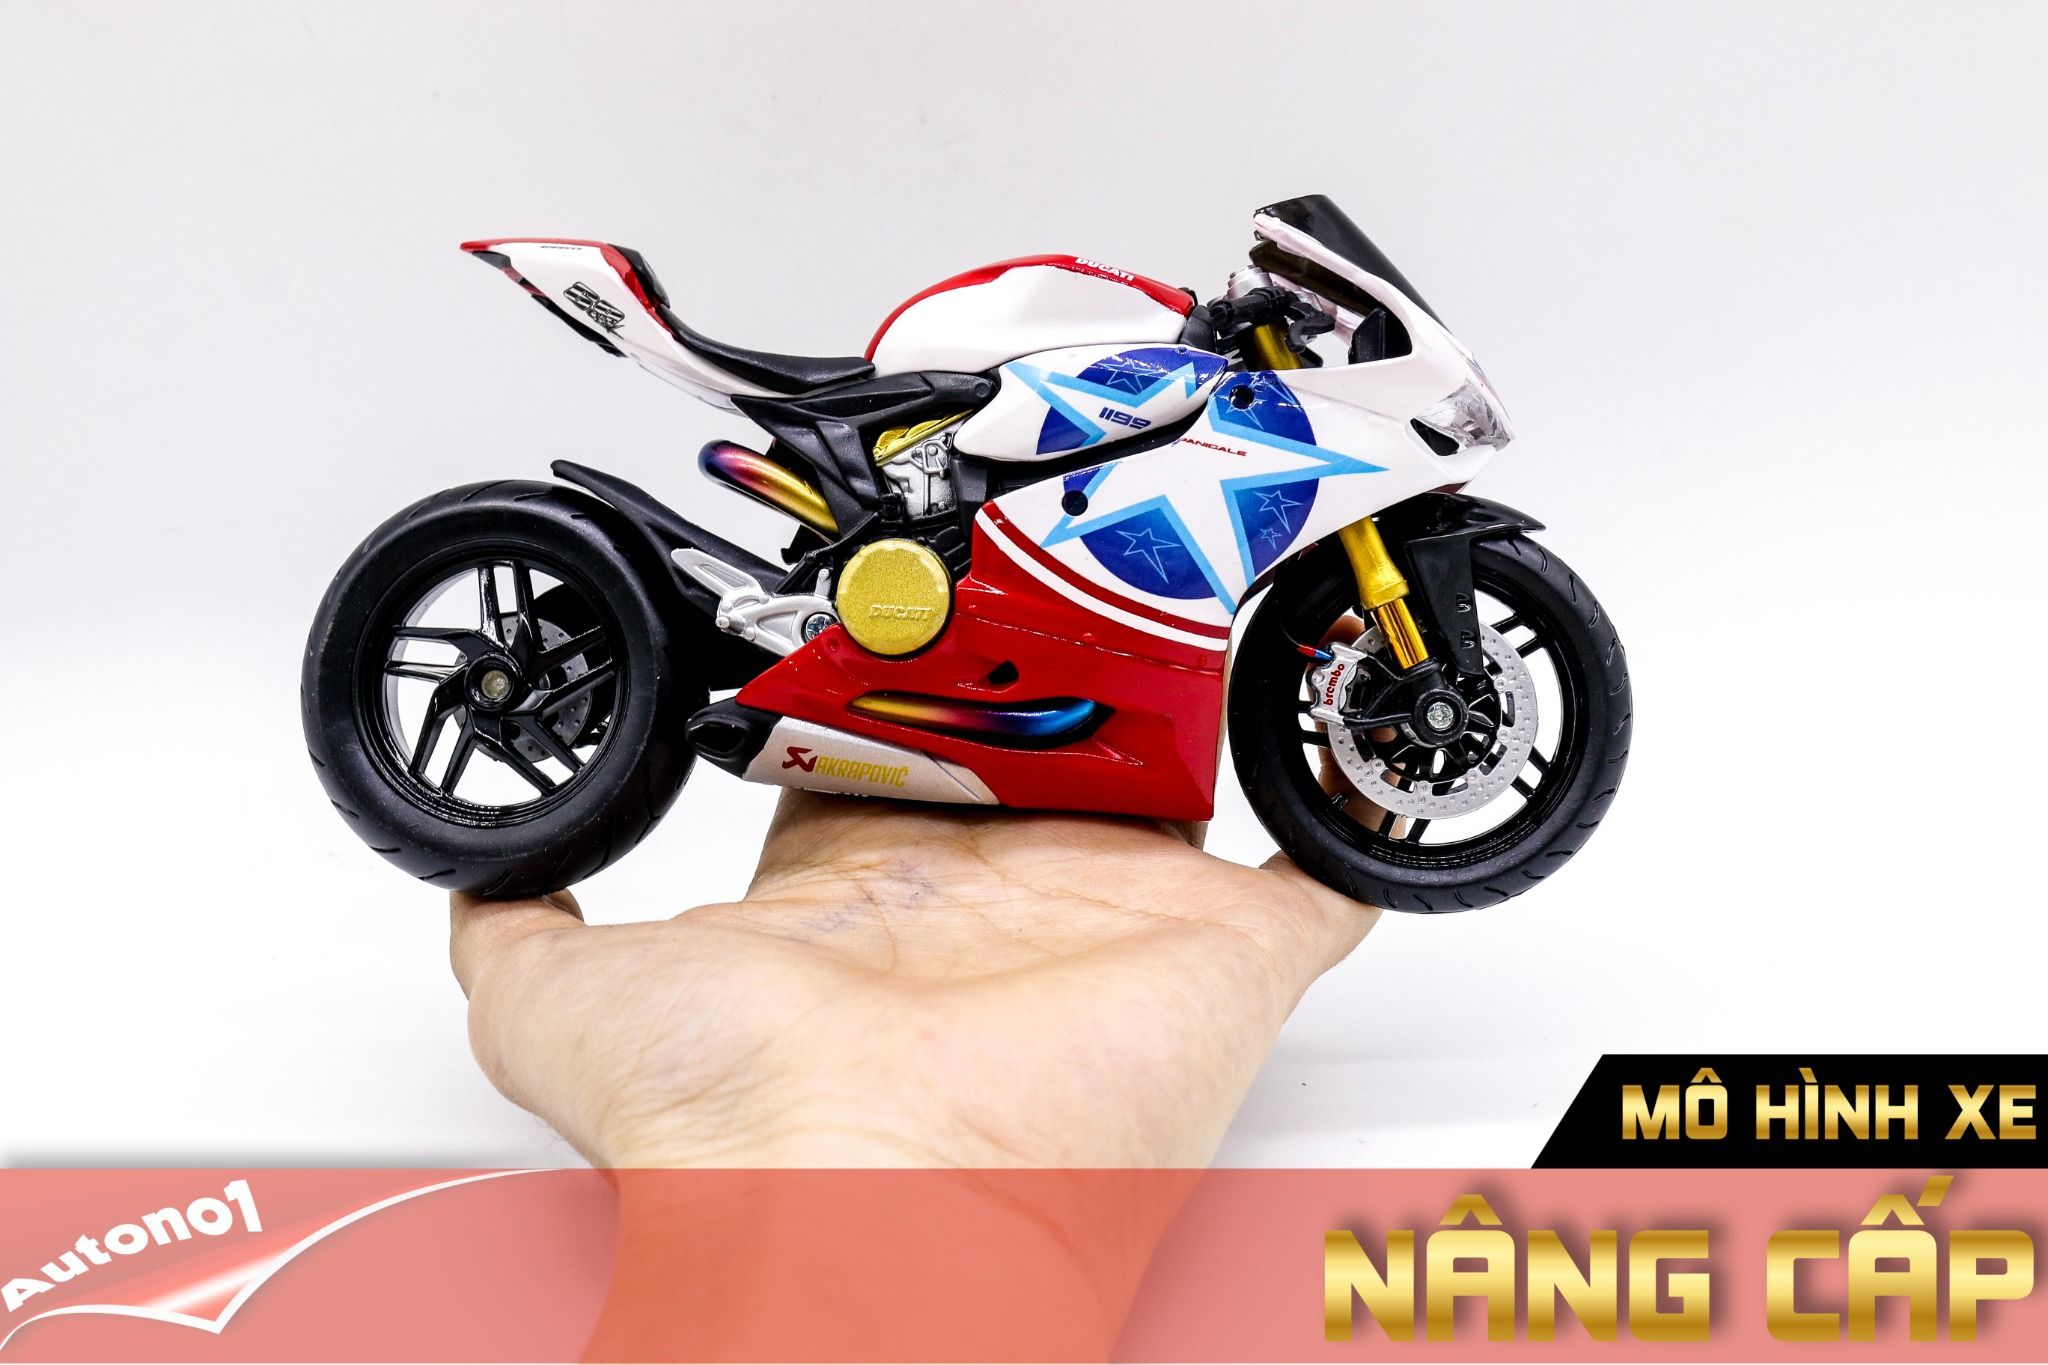  Mô hình xe độ Ducati 1199 Panigale Custom Nicky Hayden 69 1:12 Autono1 D220g 